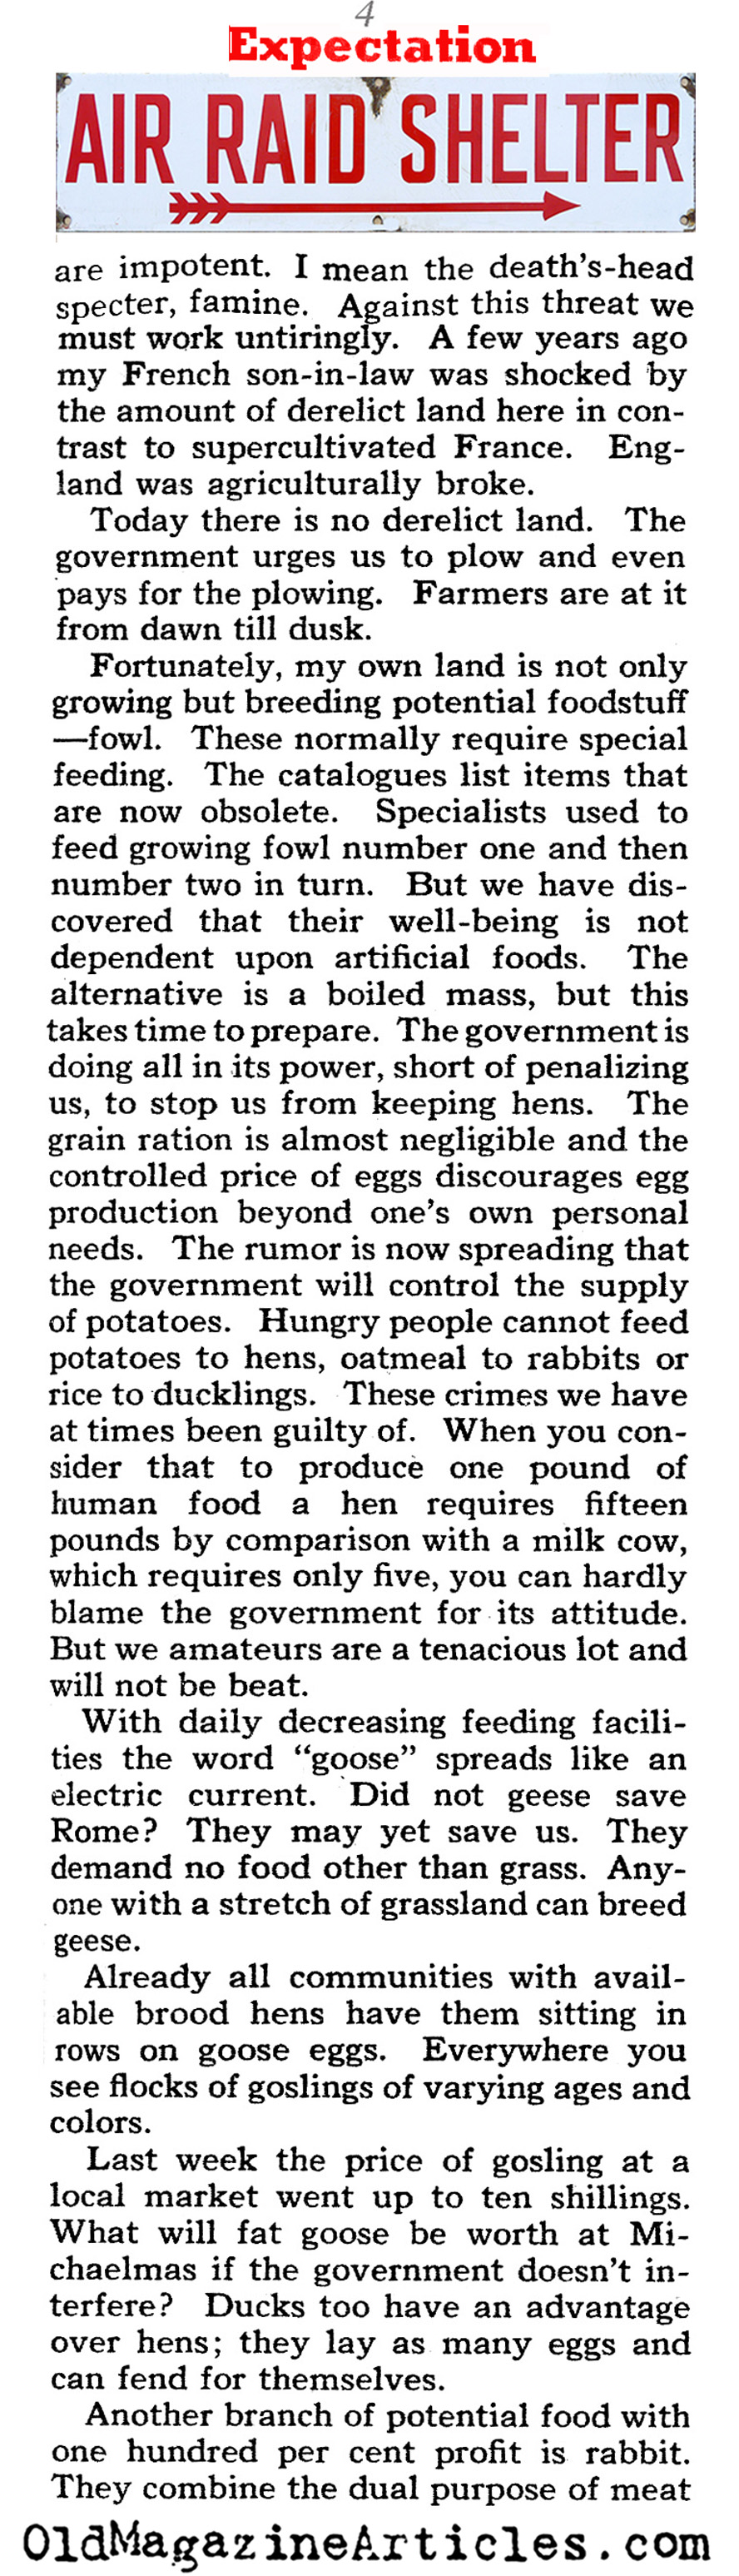 Life Under Siege (Collier's Magazine, 1941)